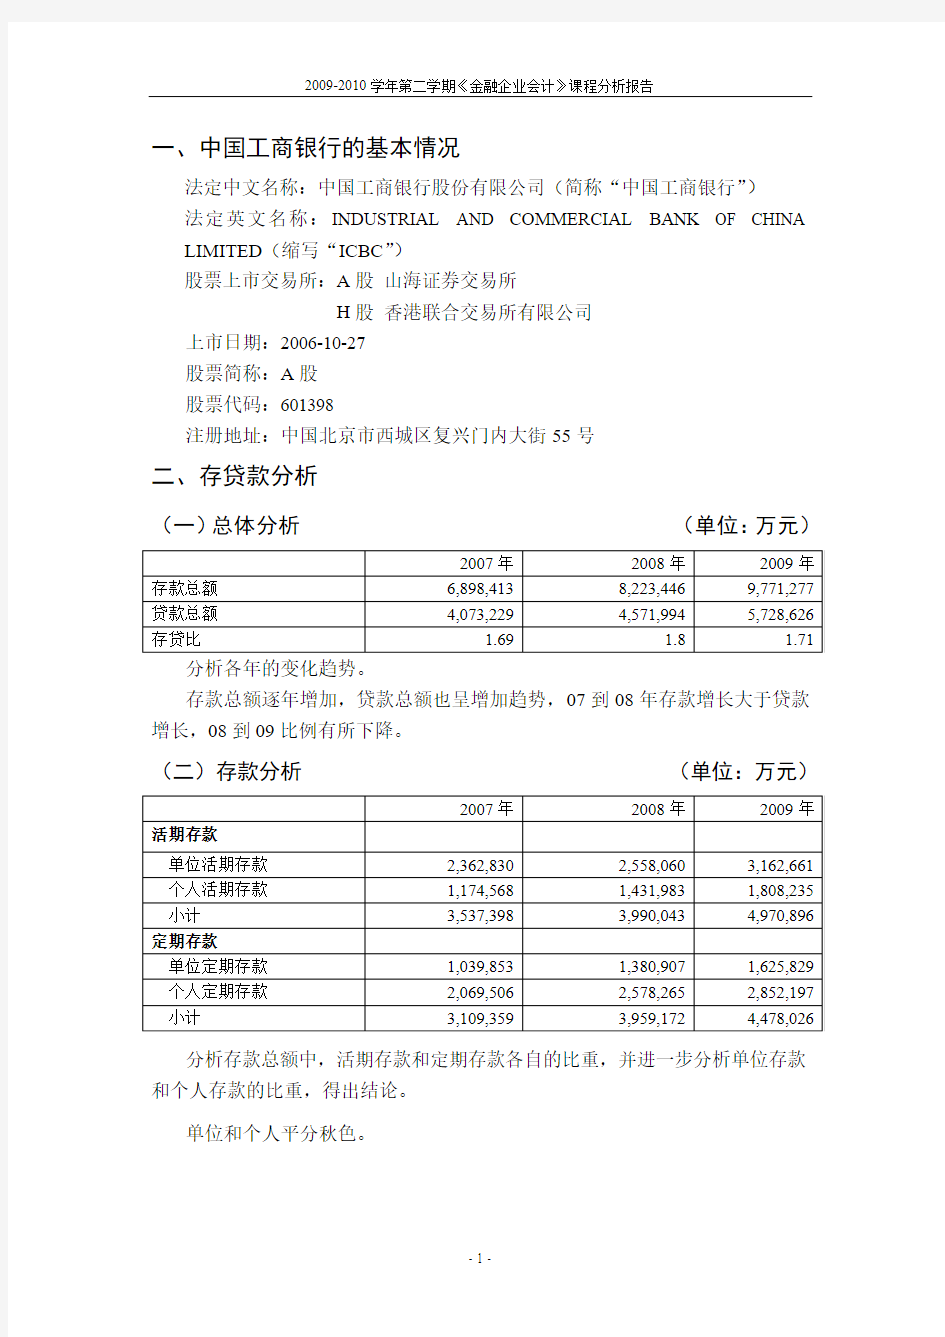 中国工商银行财务报告分析